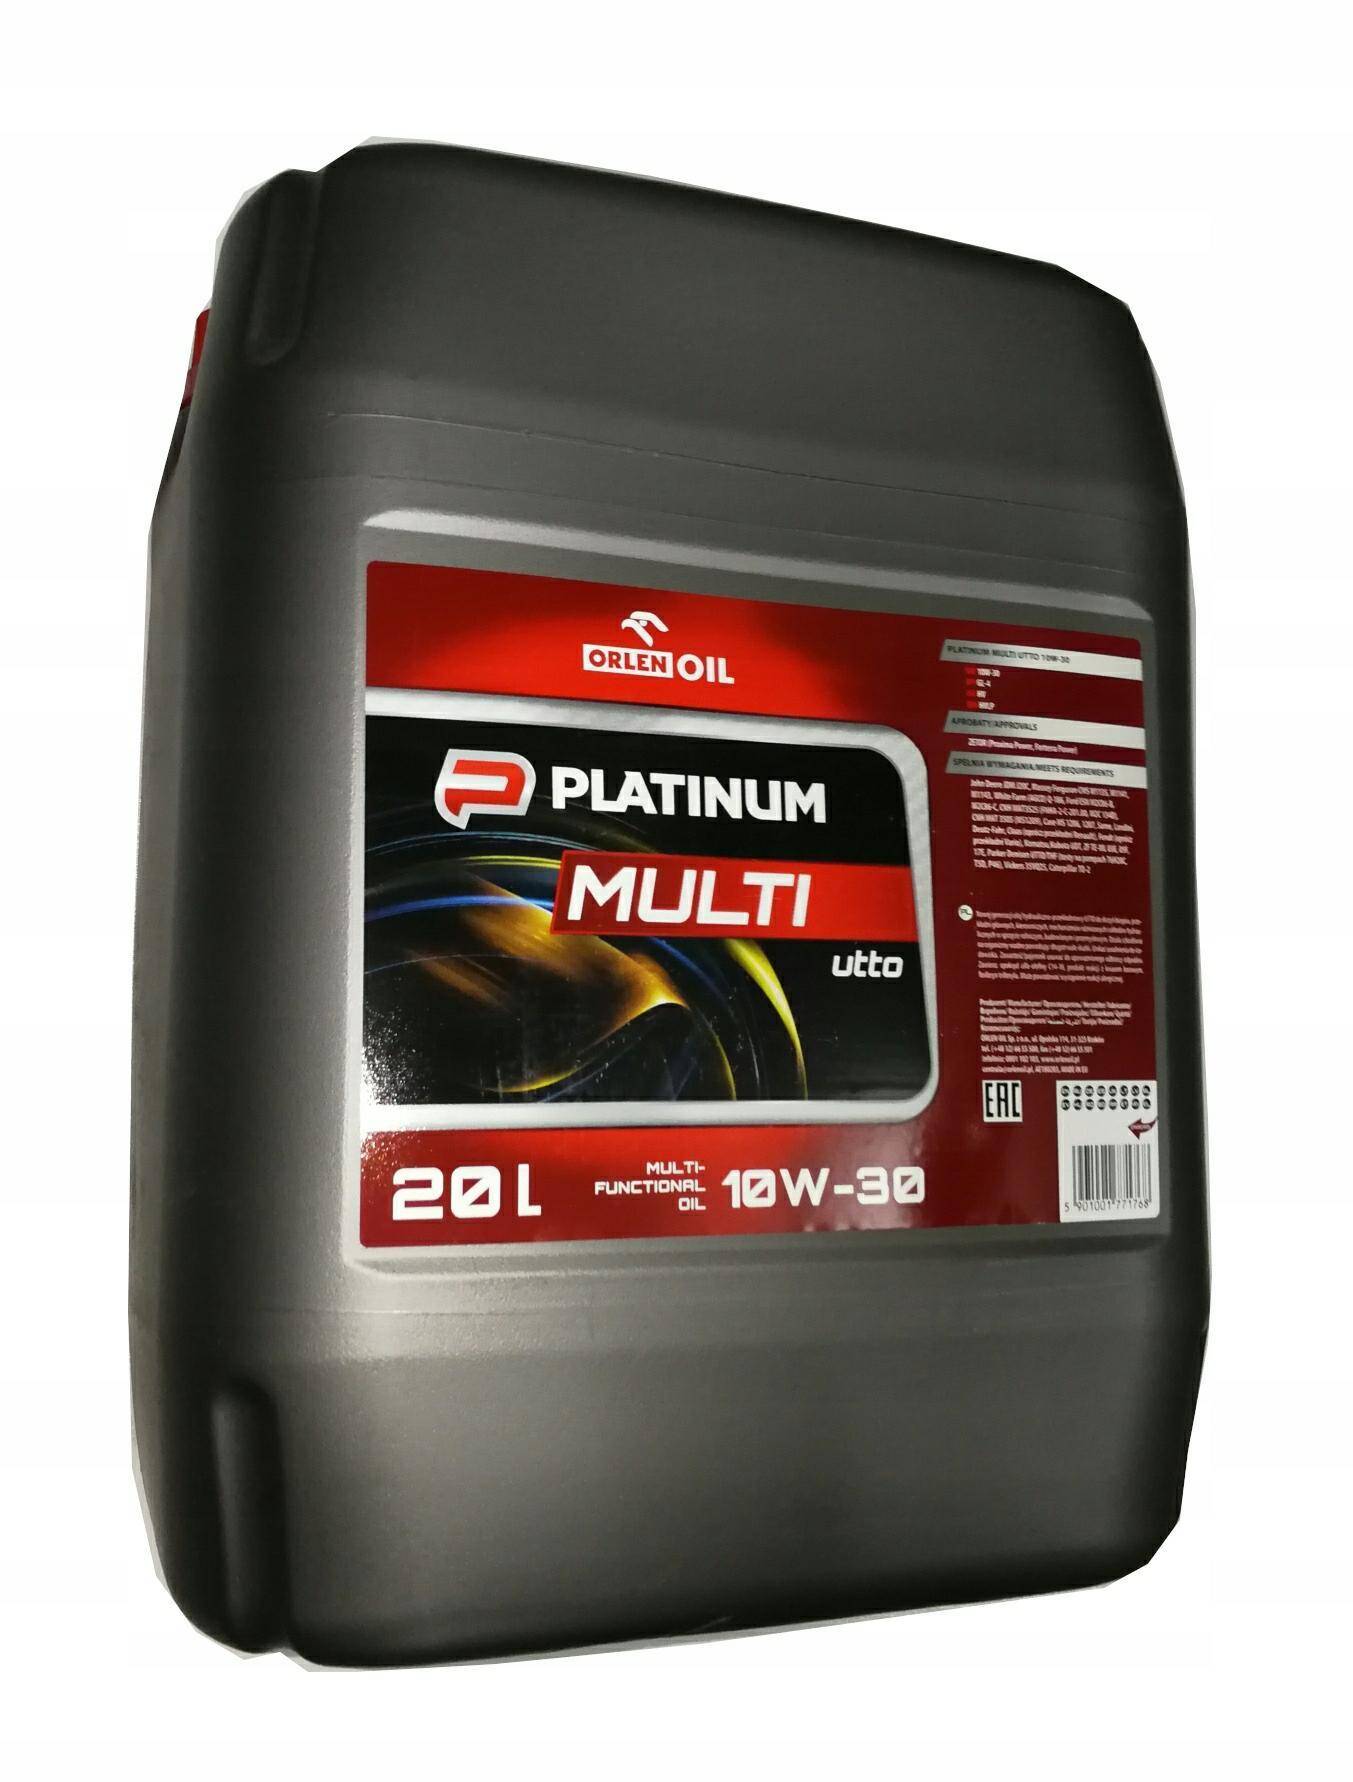 Platinum Multi Utto 10W-30 20L